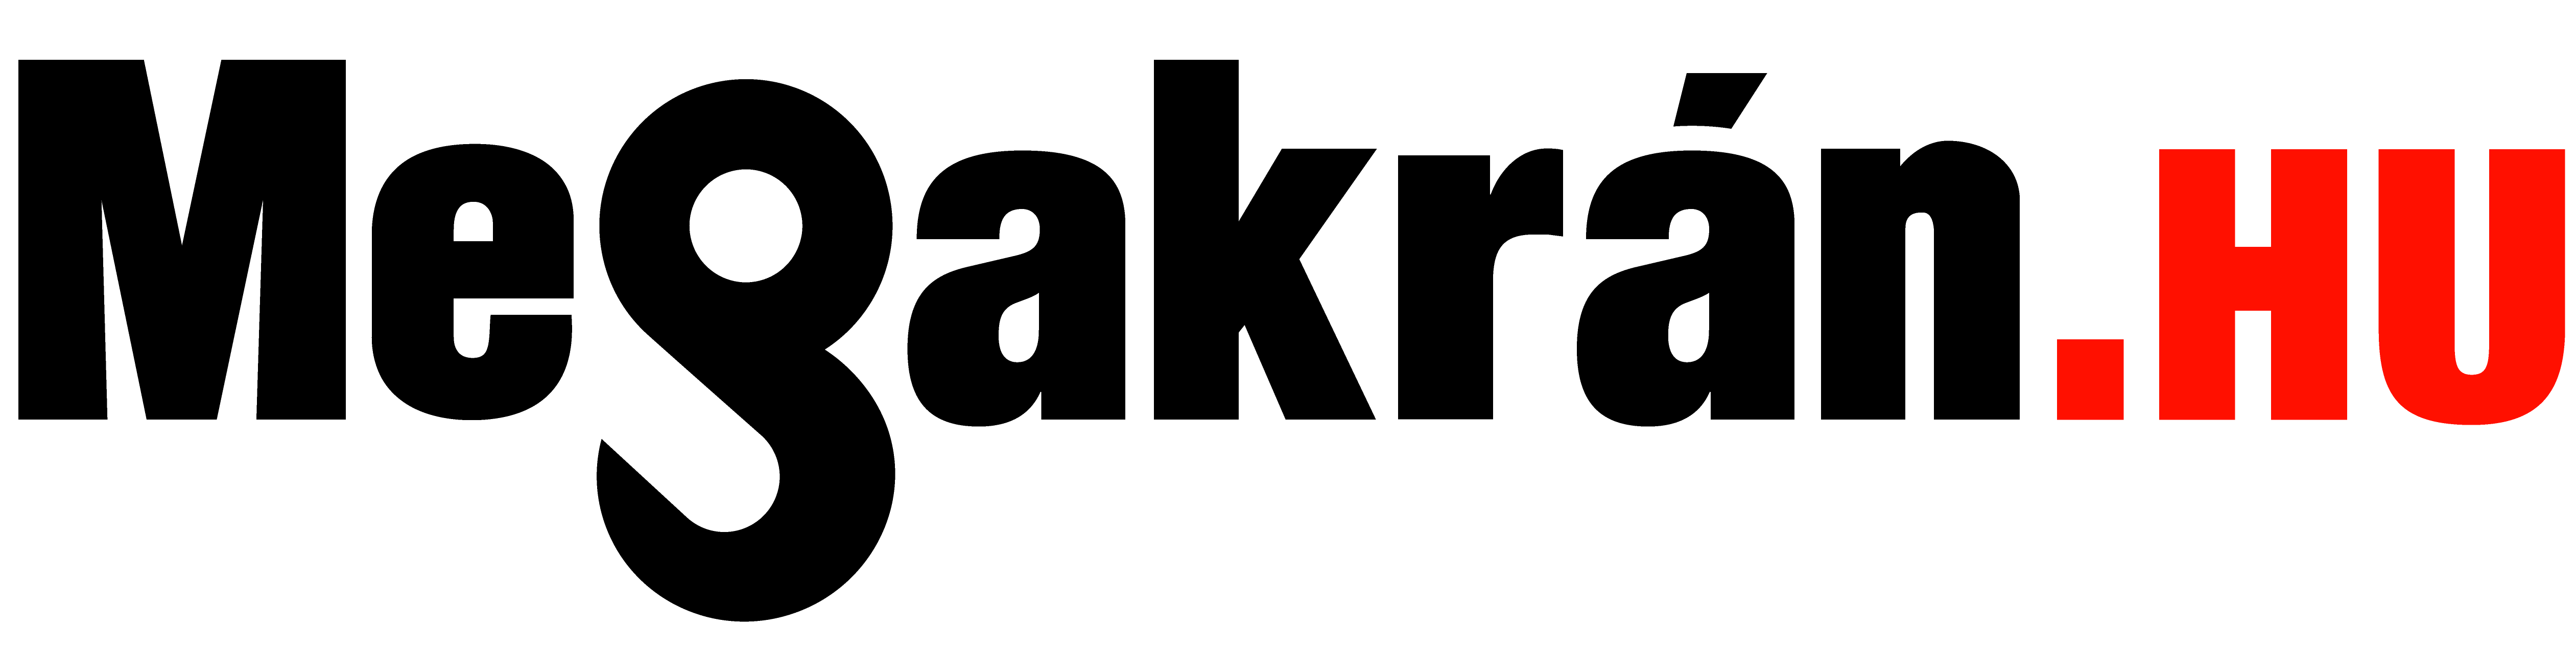 Megakran-logo-alap